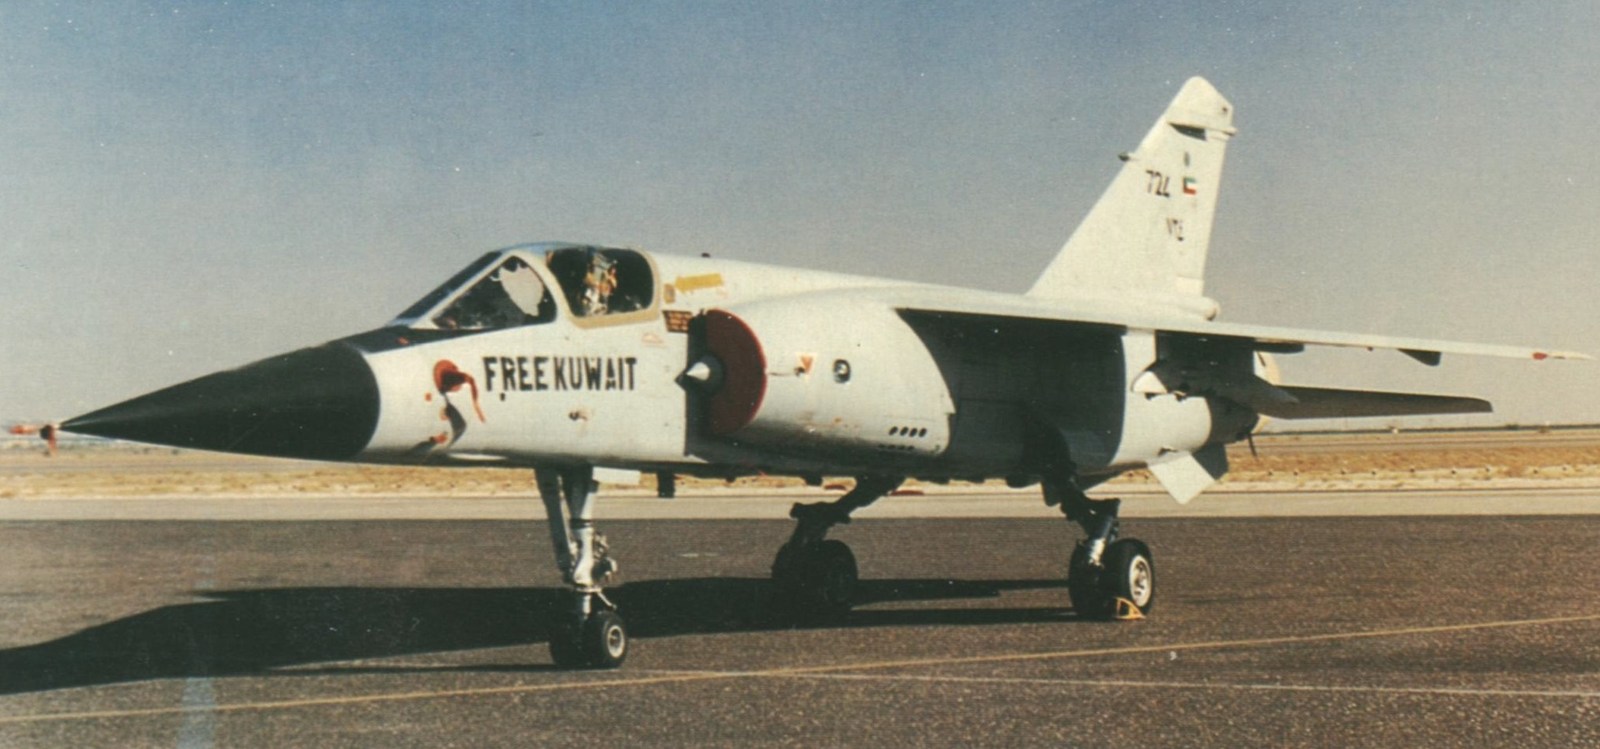 Kuwait air force Mirage F-1